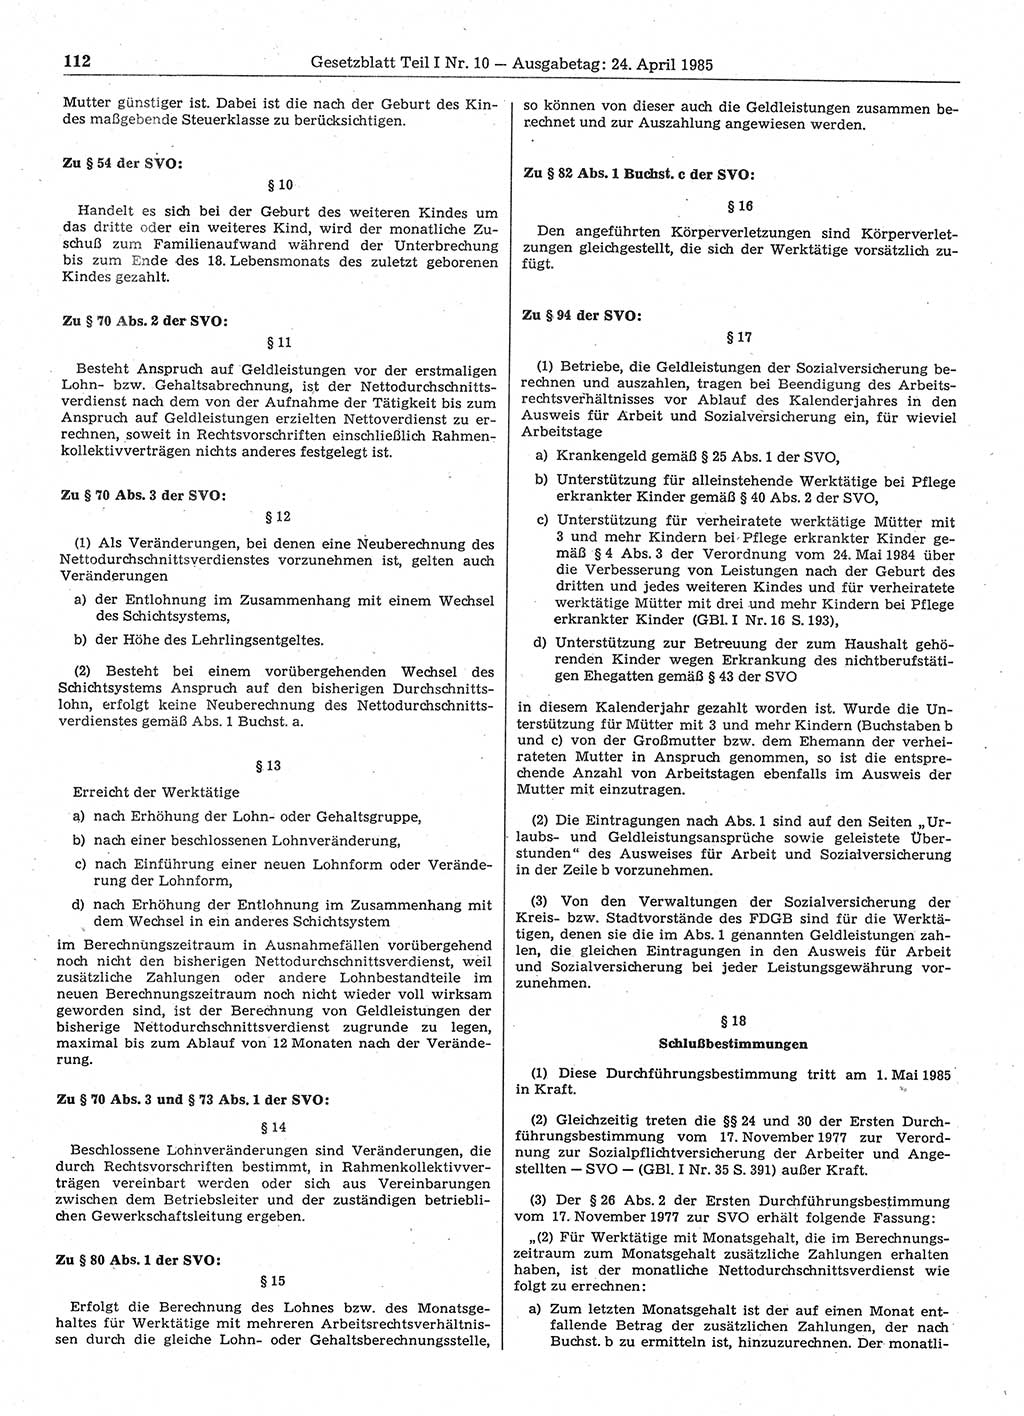 Gesetzblatt (GBl.) der Deutschen Demokratischen Republik (DDR) Teil Ⅰ 1985, Seite 112 (GBl. DDR Ⅰ 1985, S. 112)